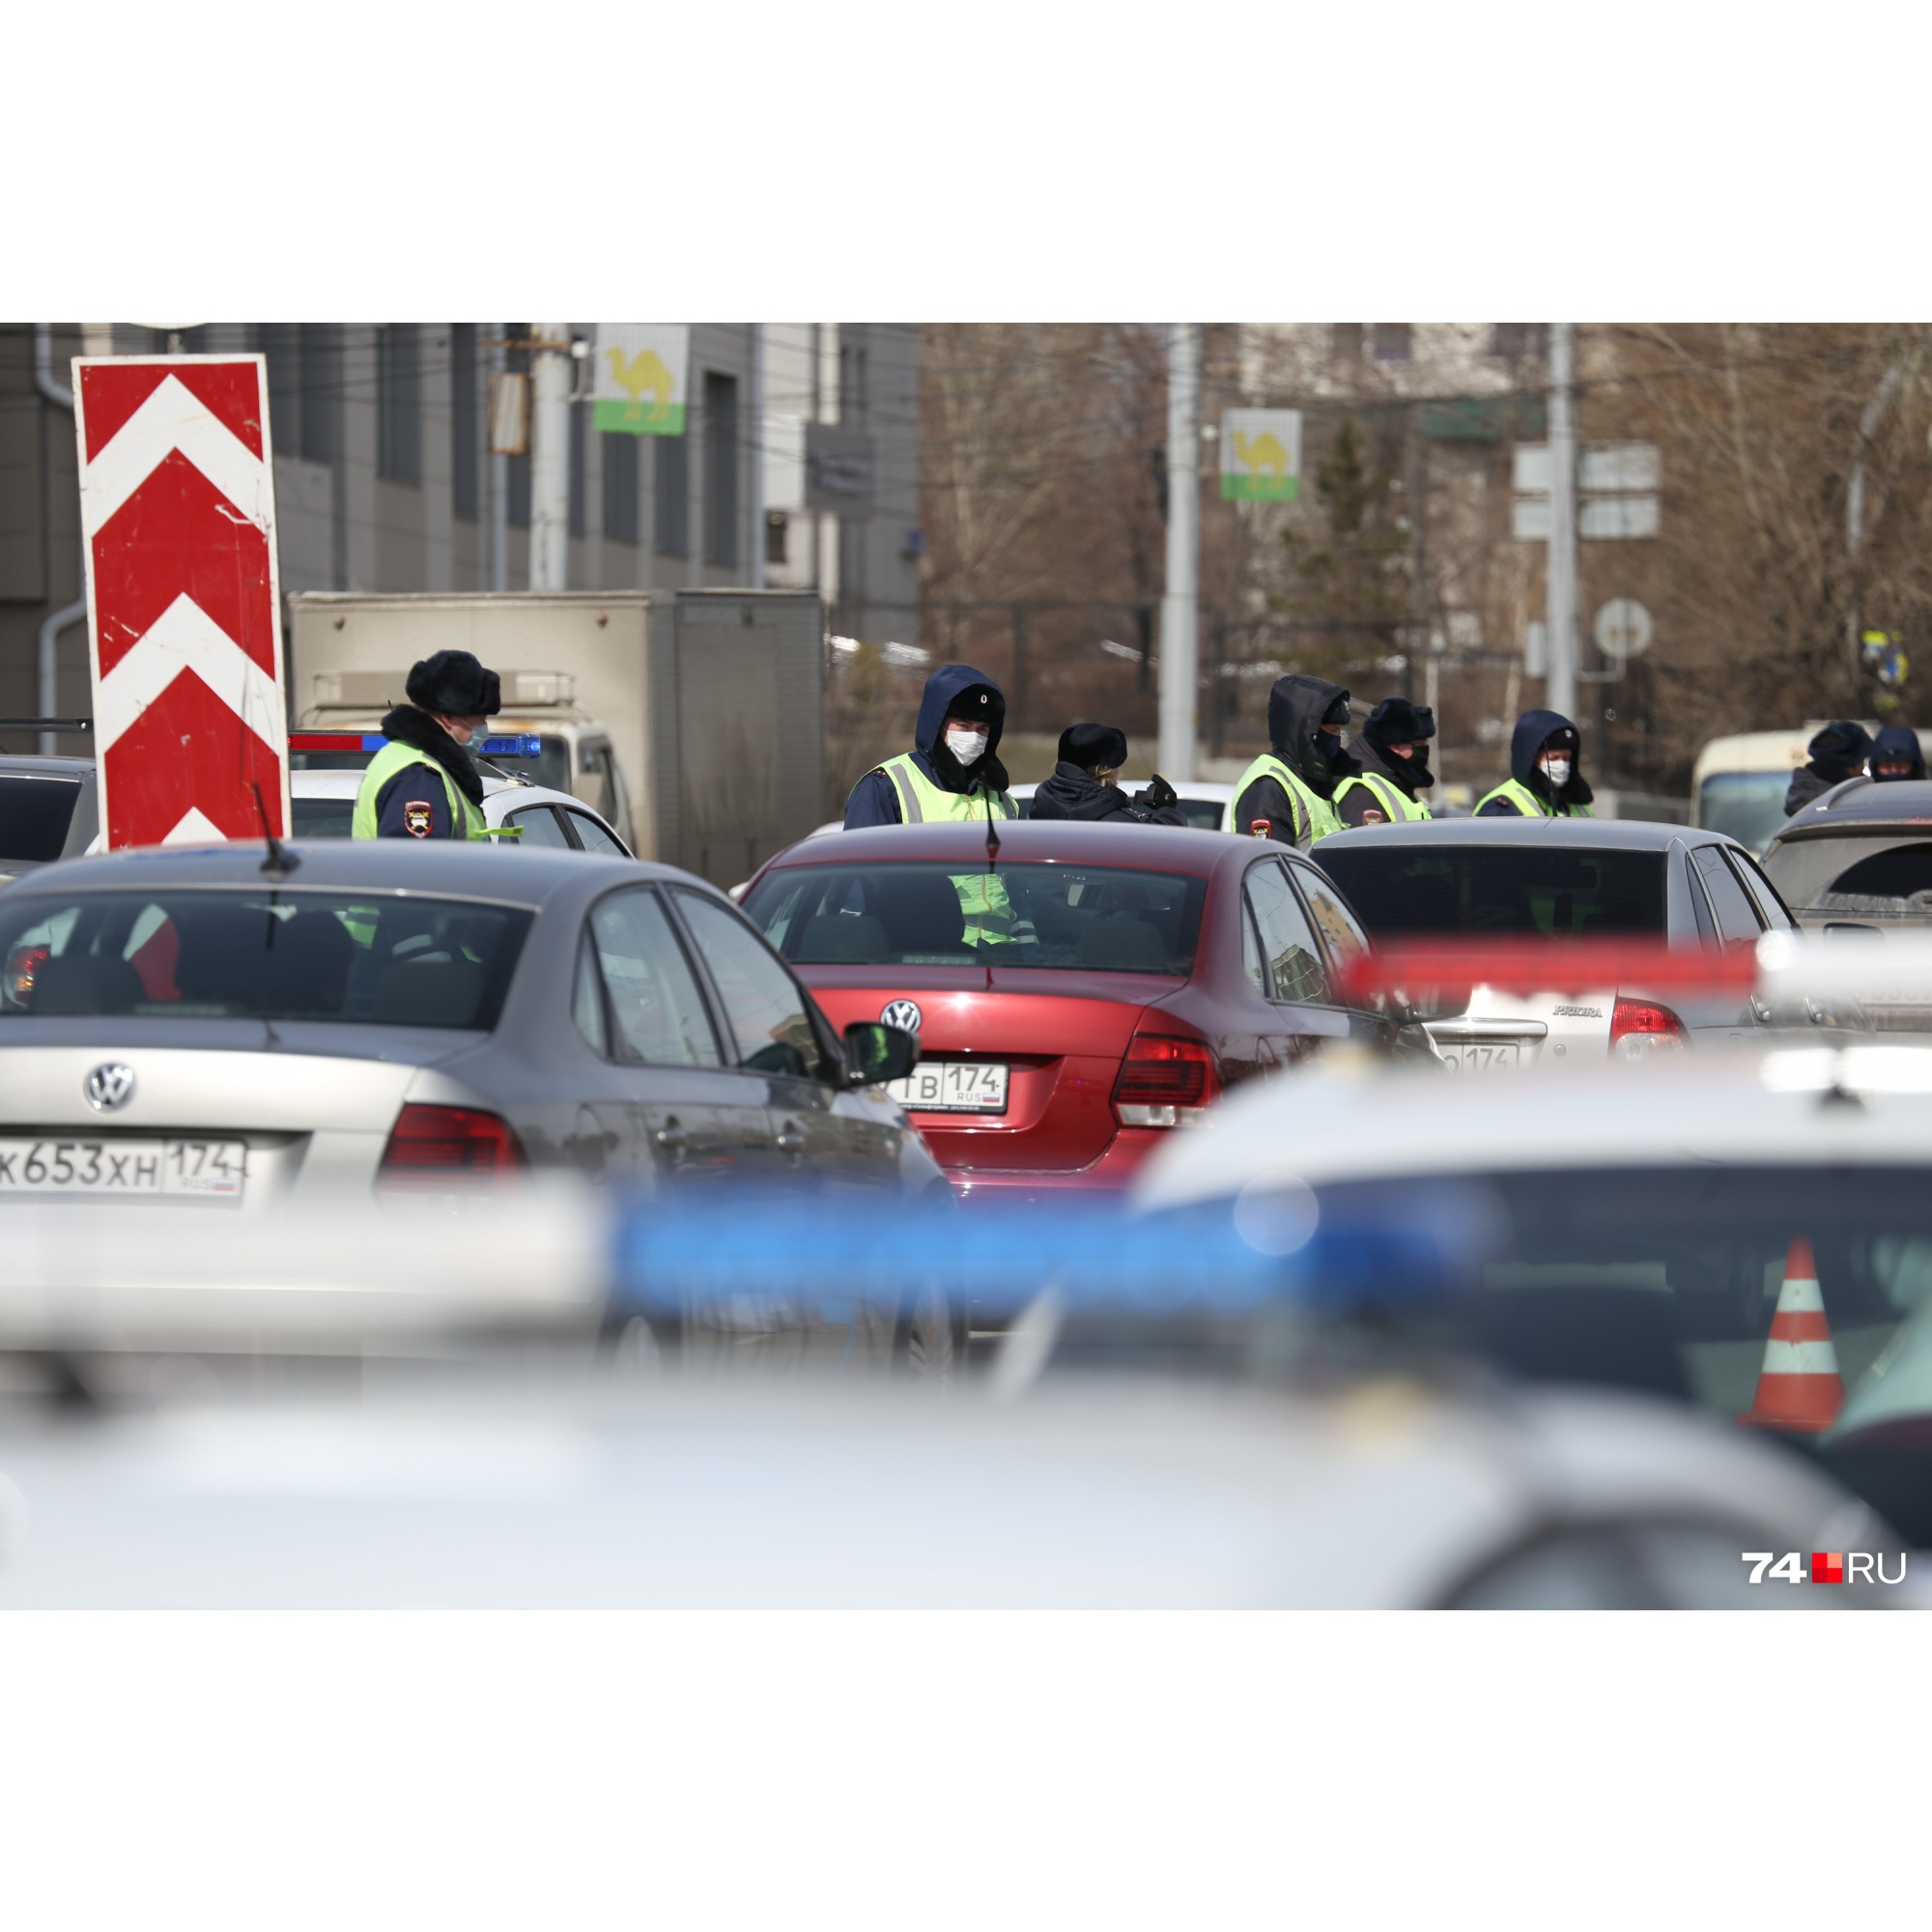 Из-за низкого уровня самоизоляции в Челябинске усилили полицейские проверки